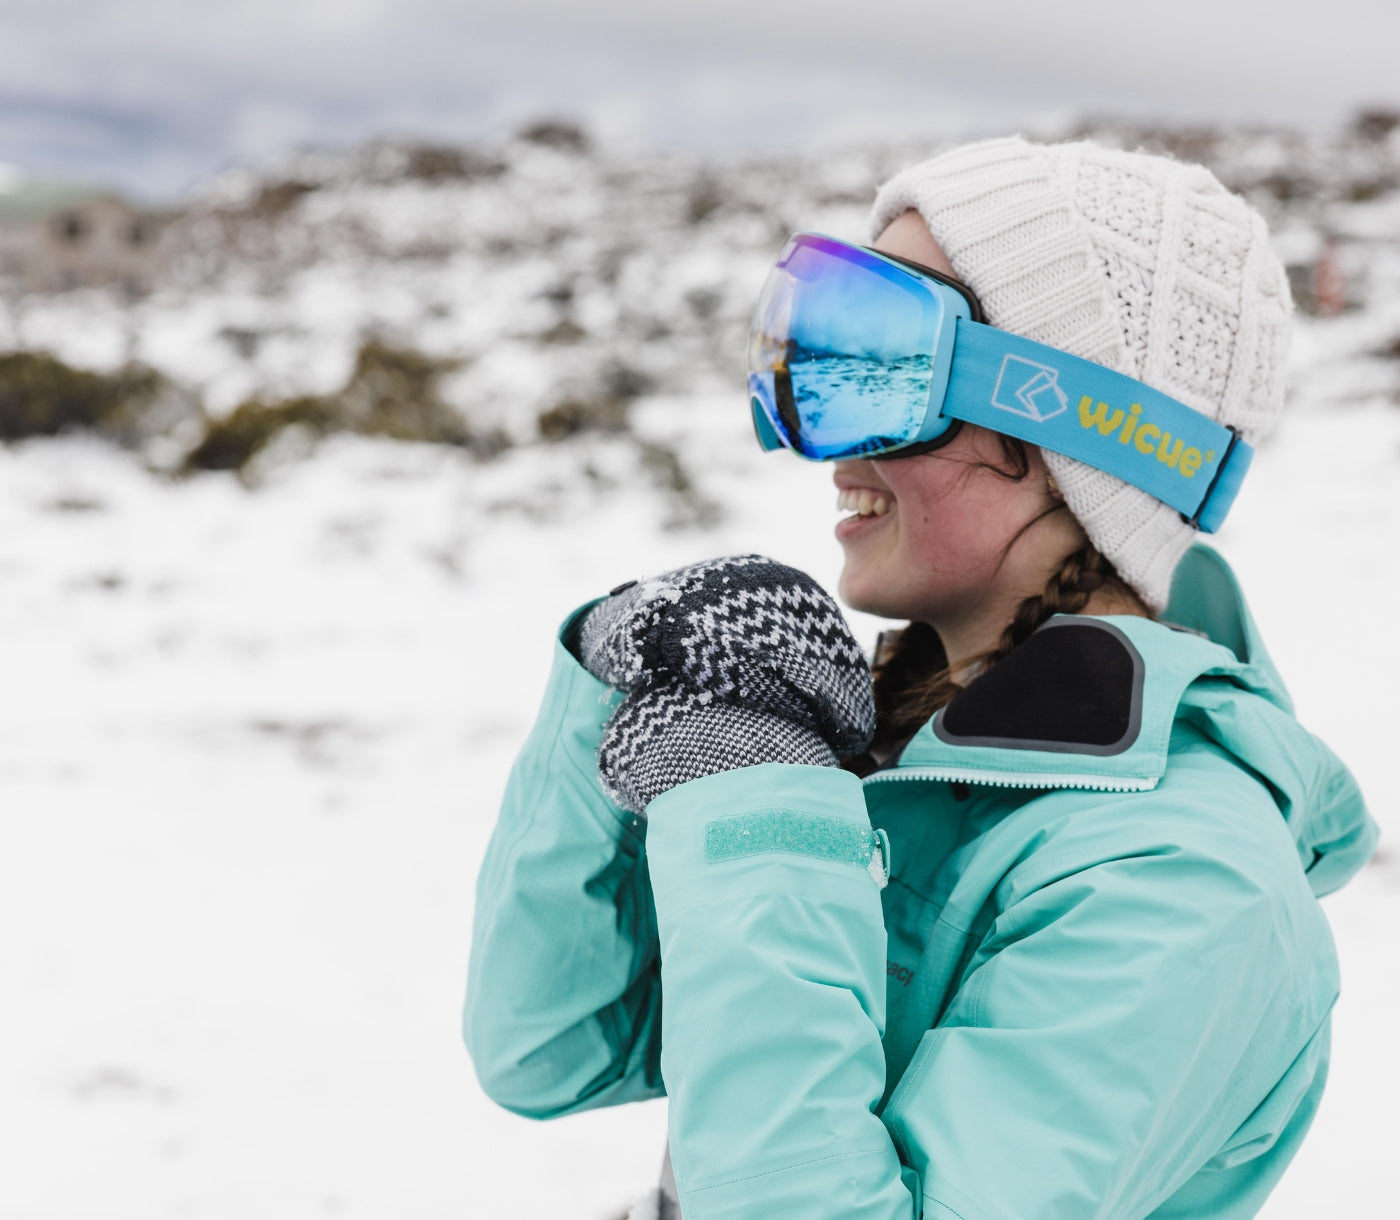 Noël Lbq Lunettes de ski Sports d'hiver Masque de ski coupe-vent extérieur  Snowboard Neige Ski Lunettes de protection UV Lunettes de ski